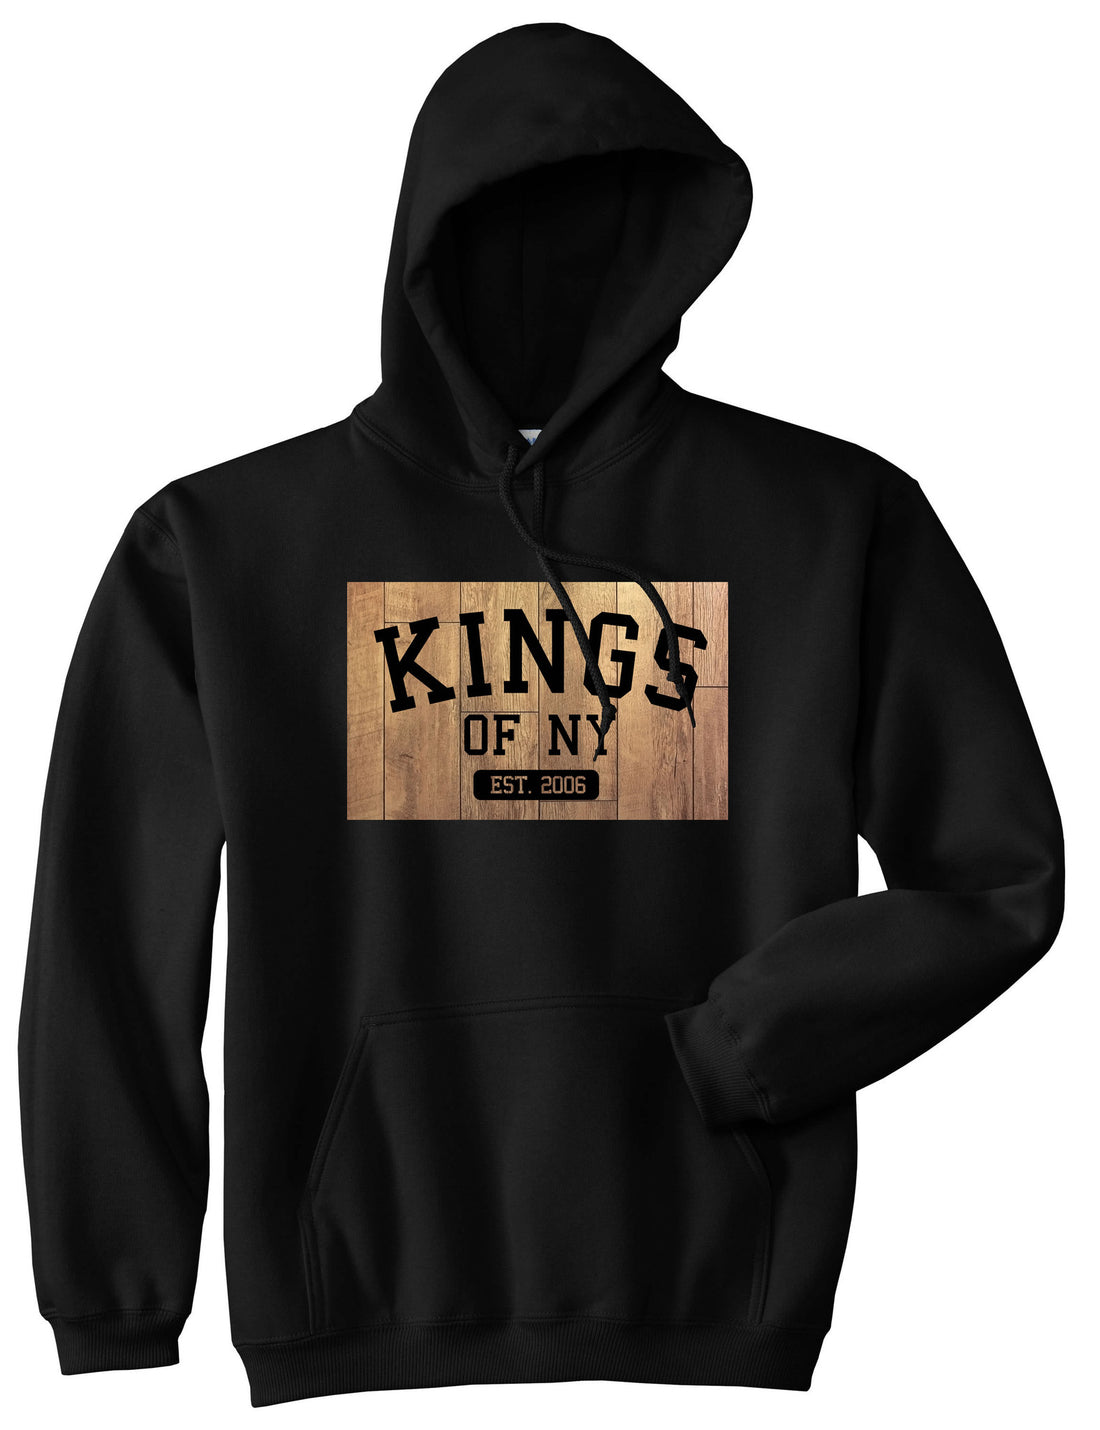 Hardwood Basketball Logo Boys Kids Pullover Hoodie Hoody in Black by Kings Of NY